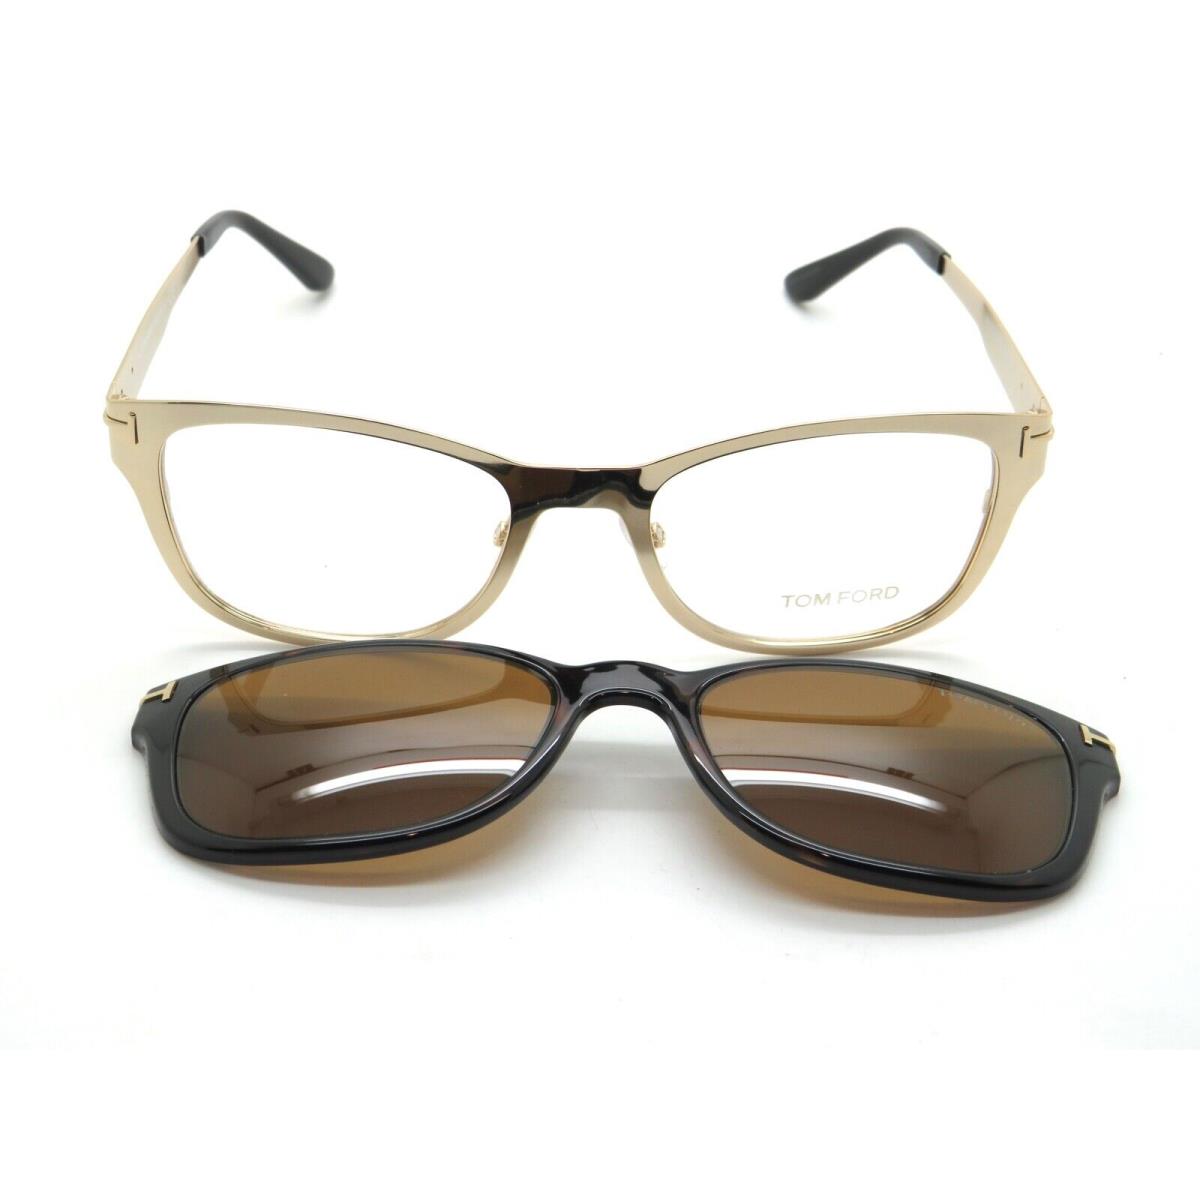 Tom Ford eyeglasses  - Shiny Gold Frame 0